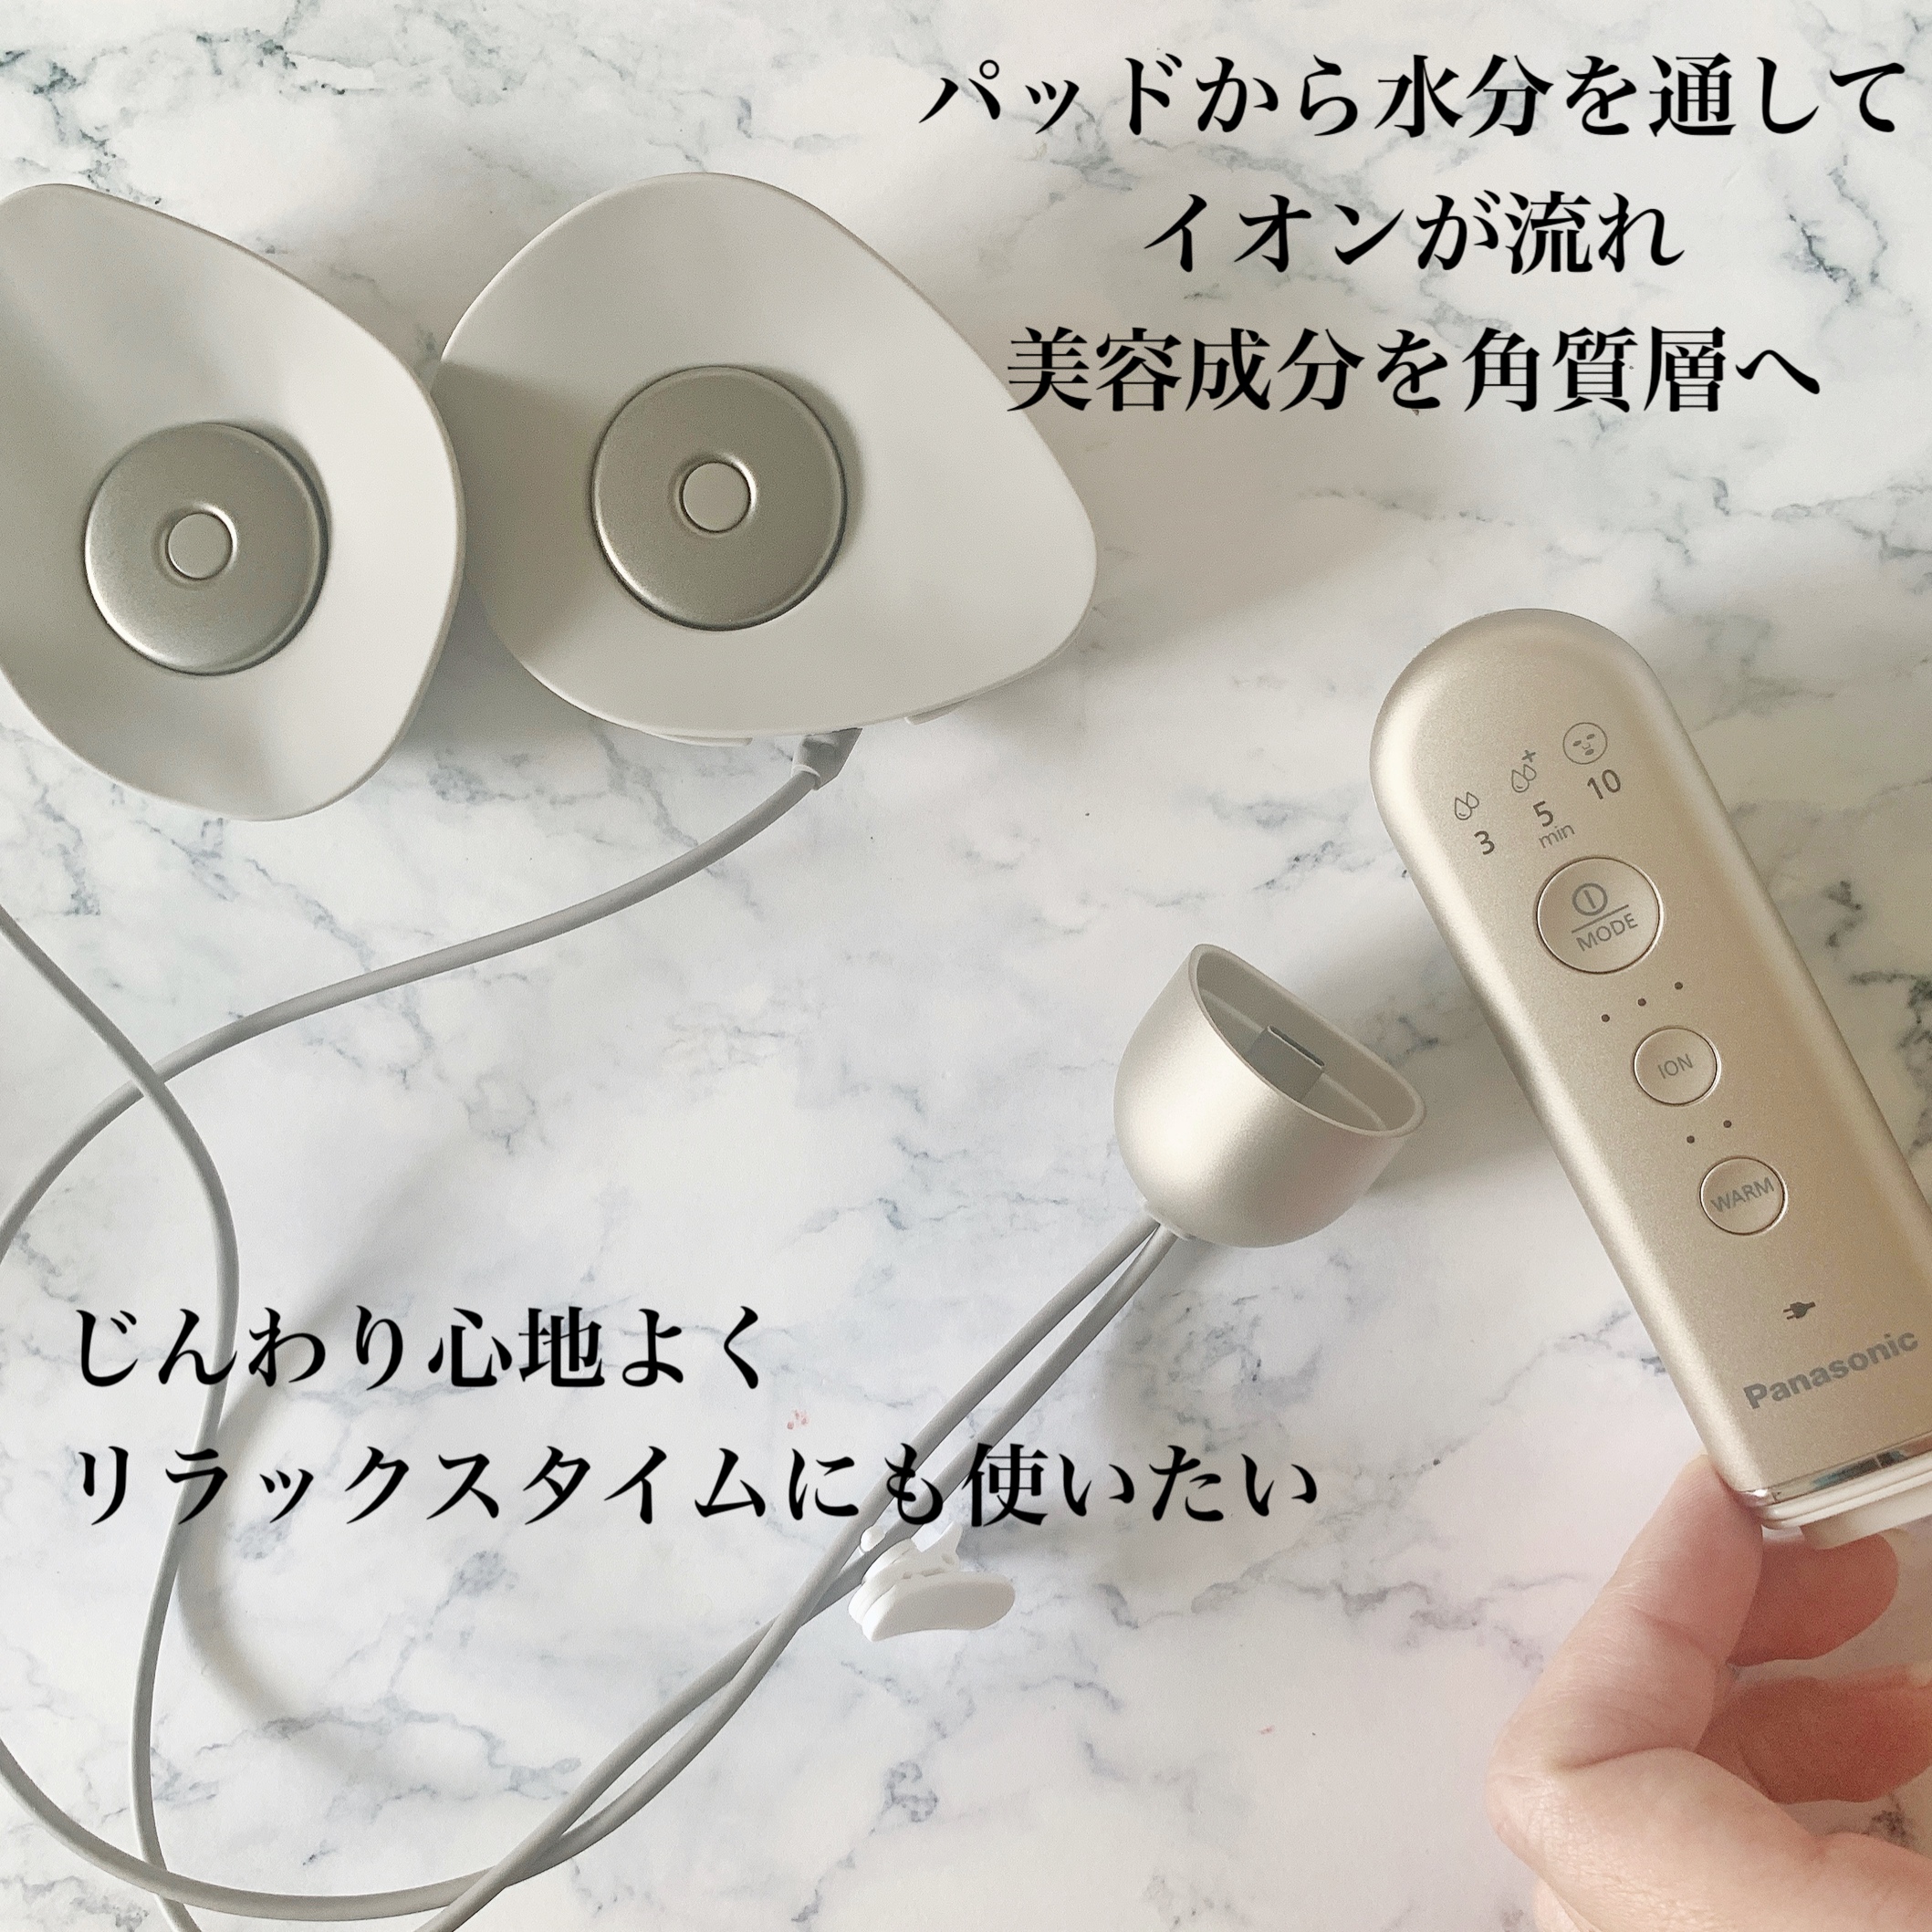 Panasonic(パナソニック) マスク型イオン美顔器 イオンブースト EH-SM50の良い点・メリットに関するまみやこさんの口コミ画像3